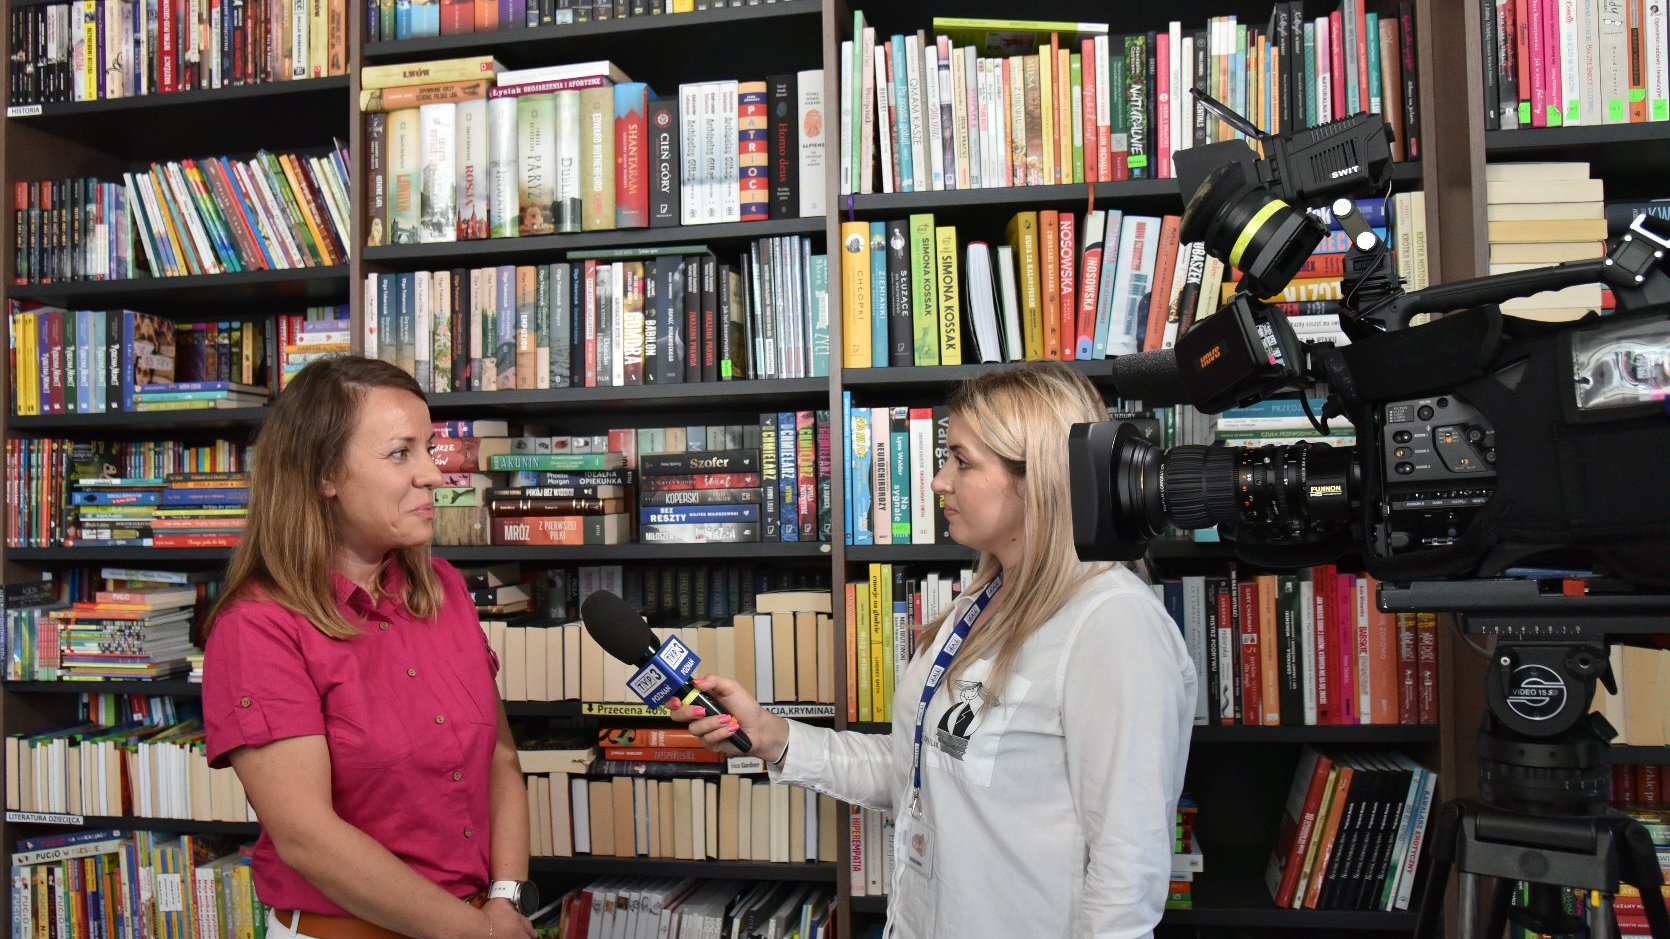 Zdjęcie przedstawia kobietę udzielającą wywiadu przed kamerą. Obok znajduje się półka z książkami.